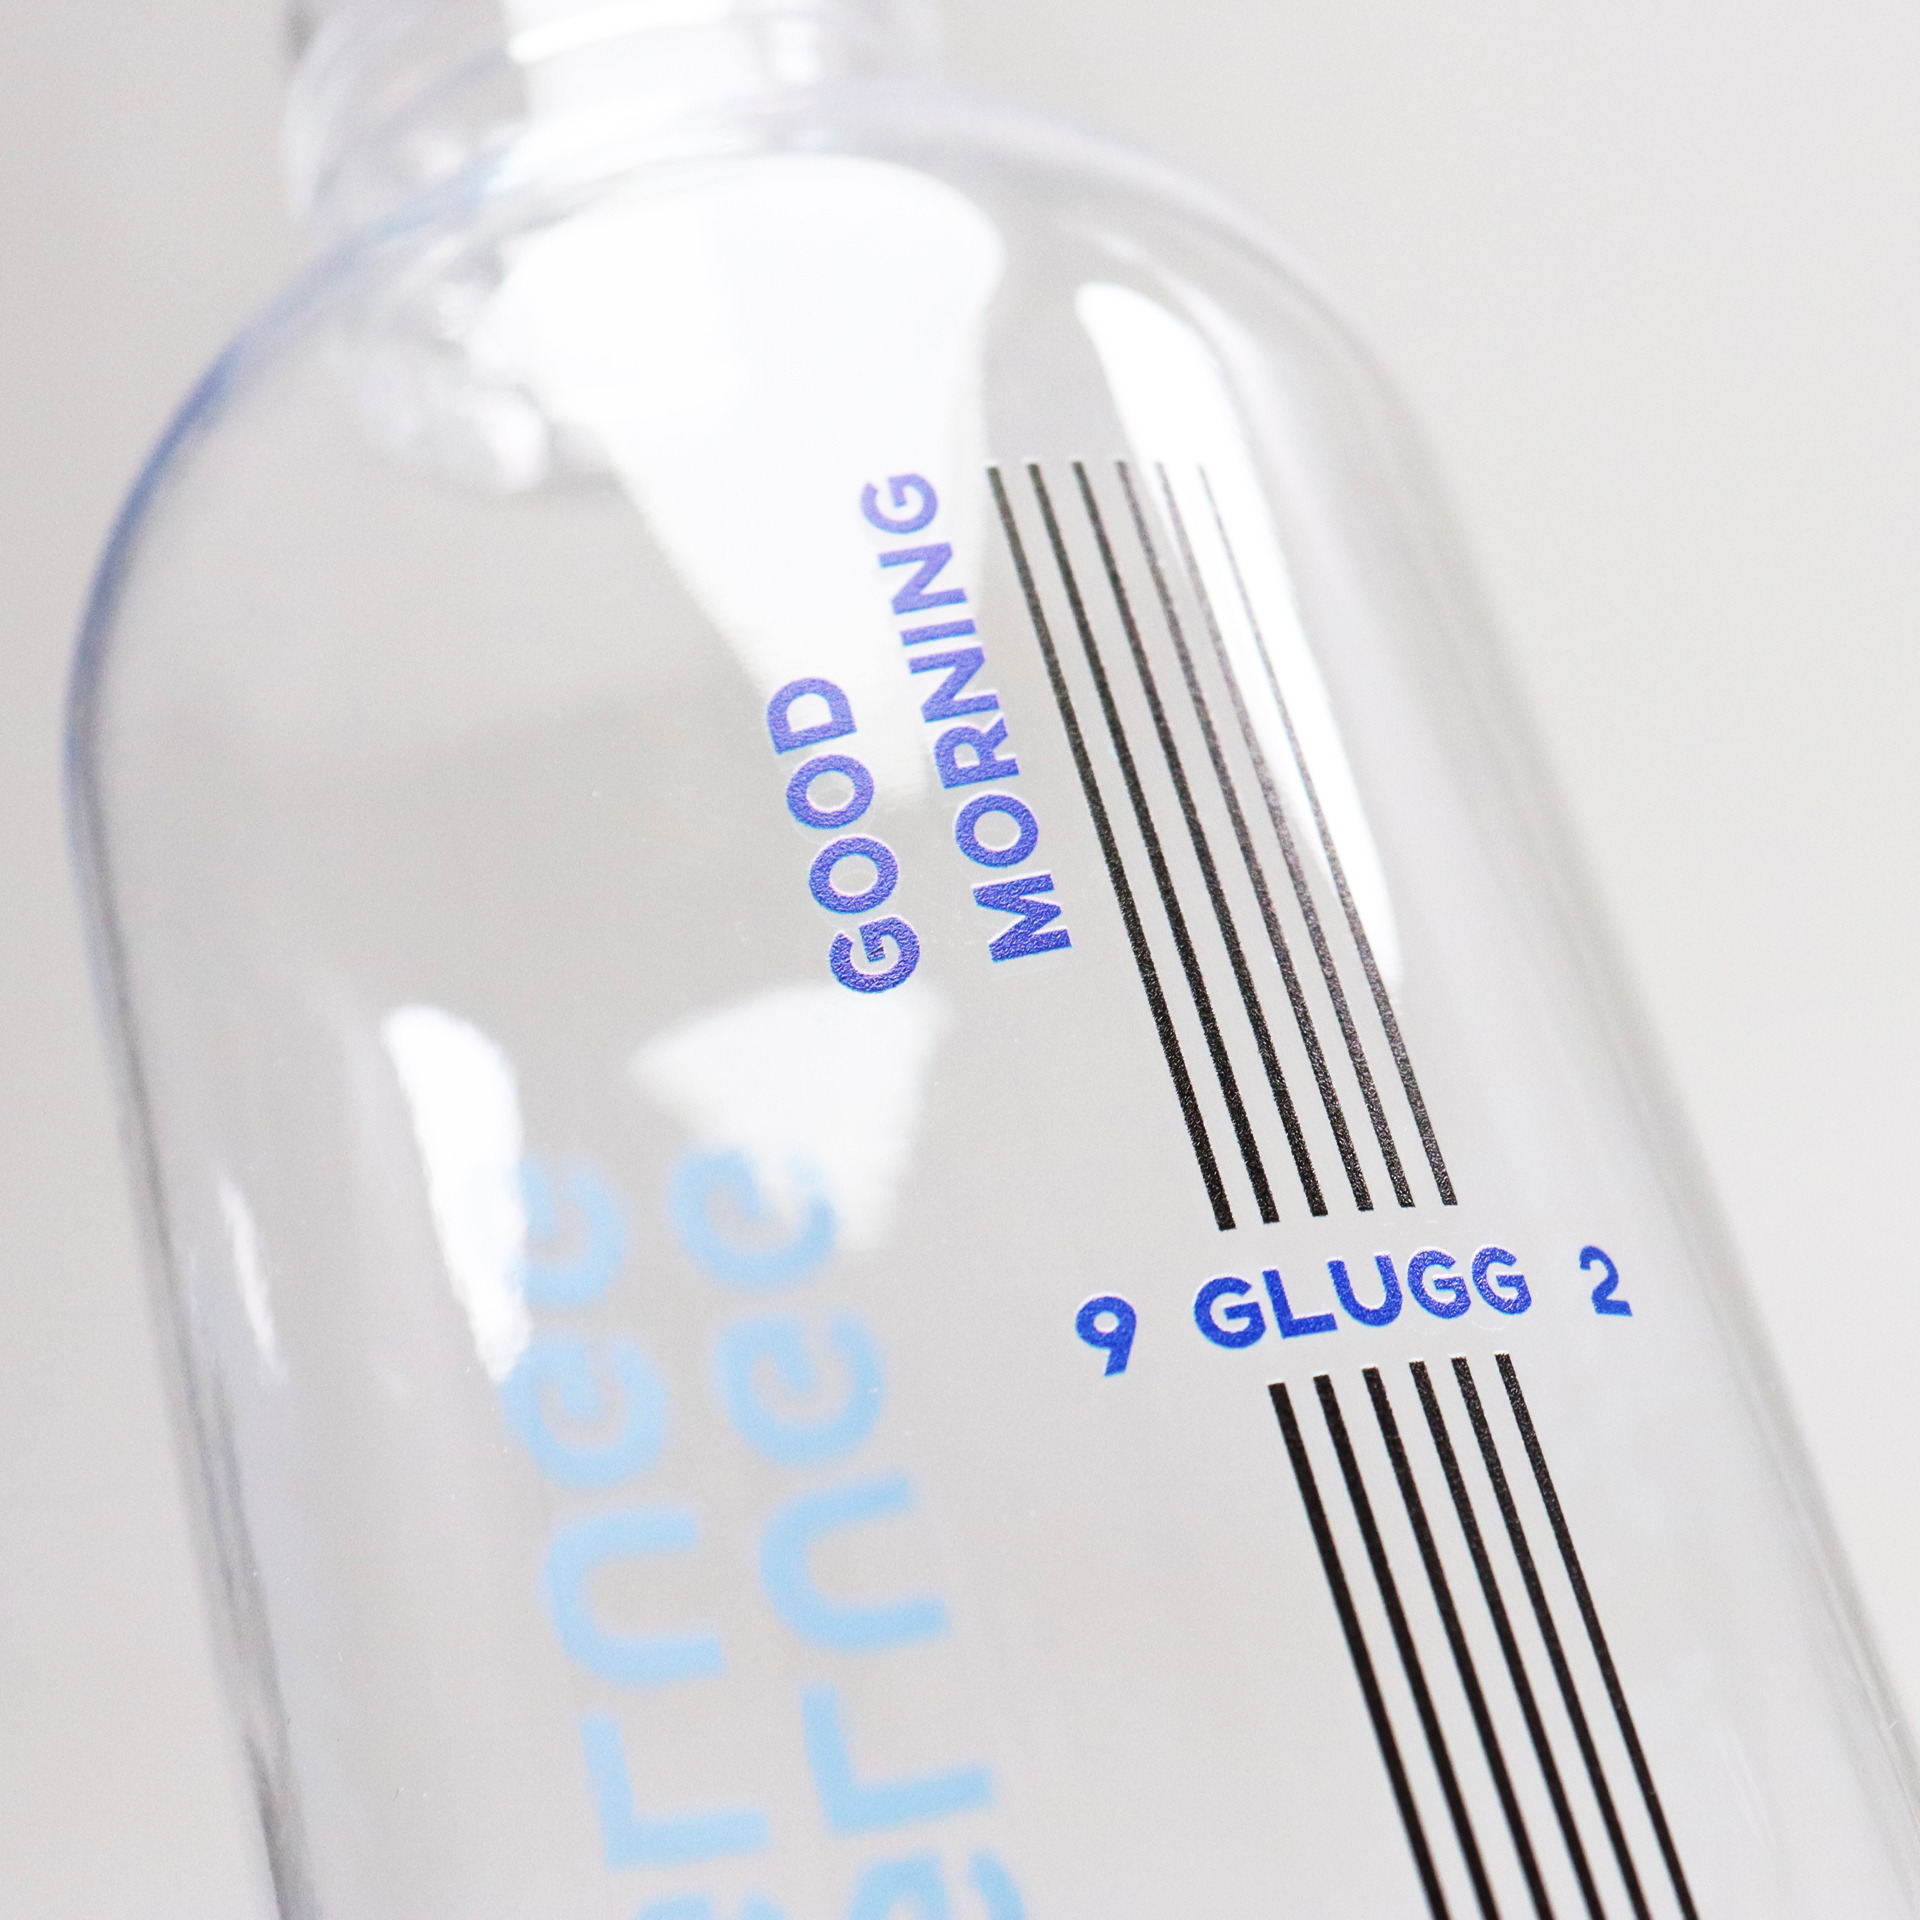 Kunststoffflasche 1 L Vatten Glugg Glugg